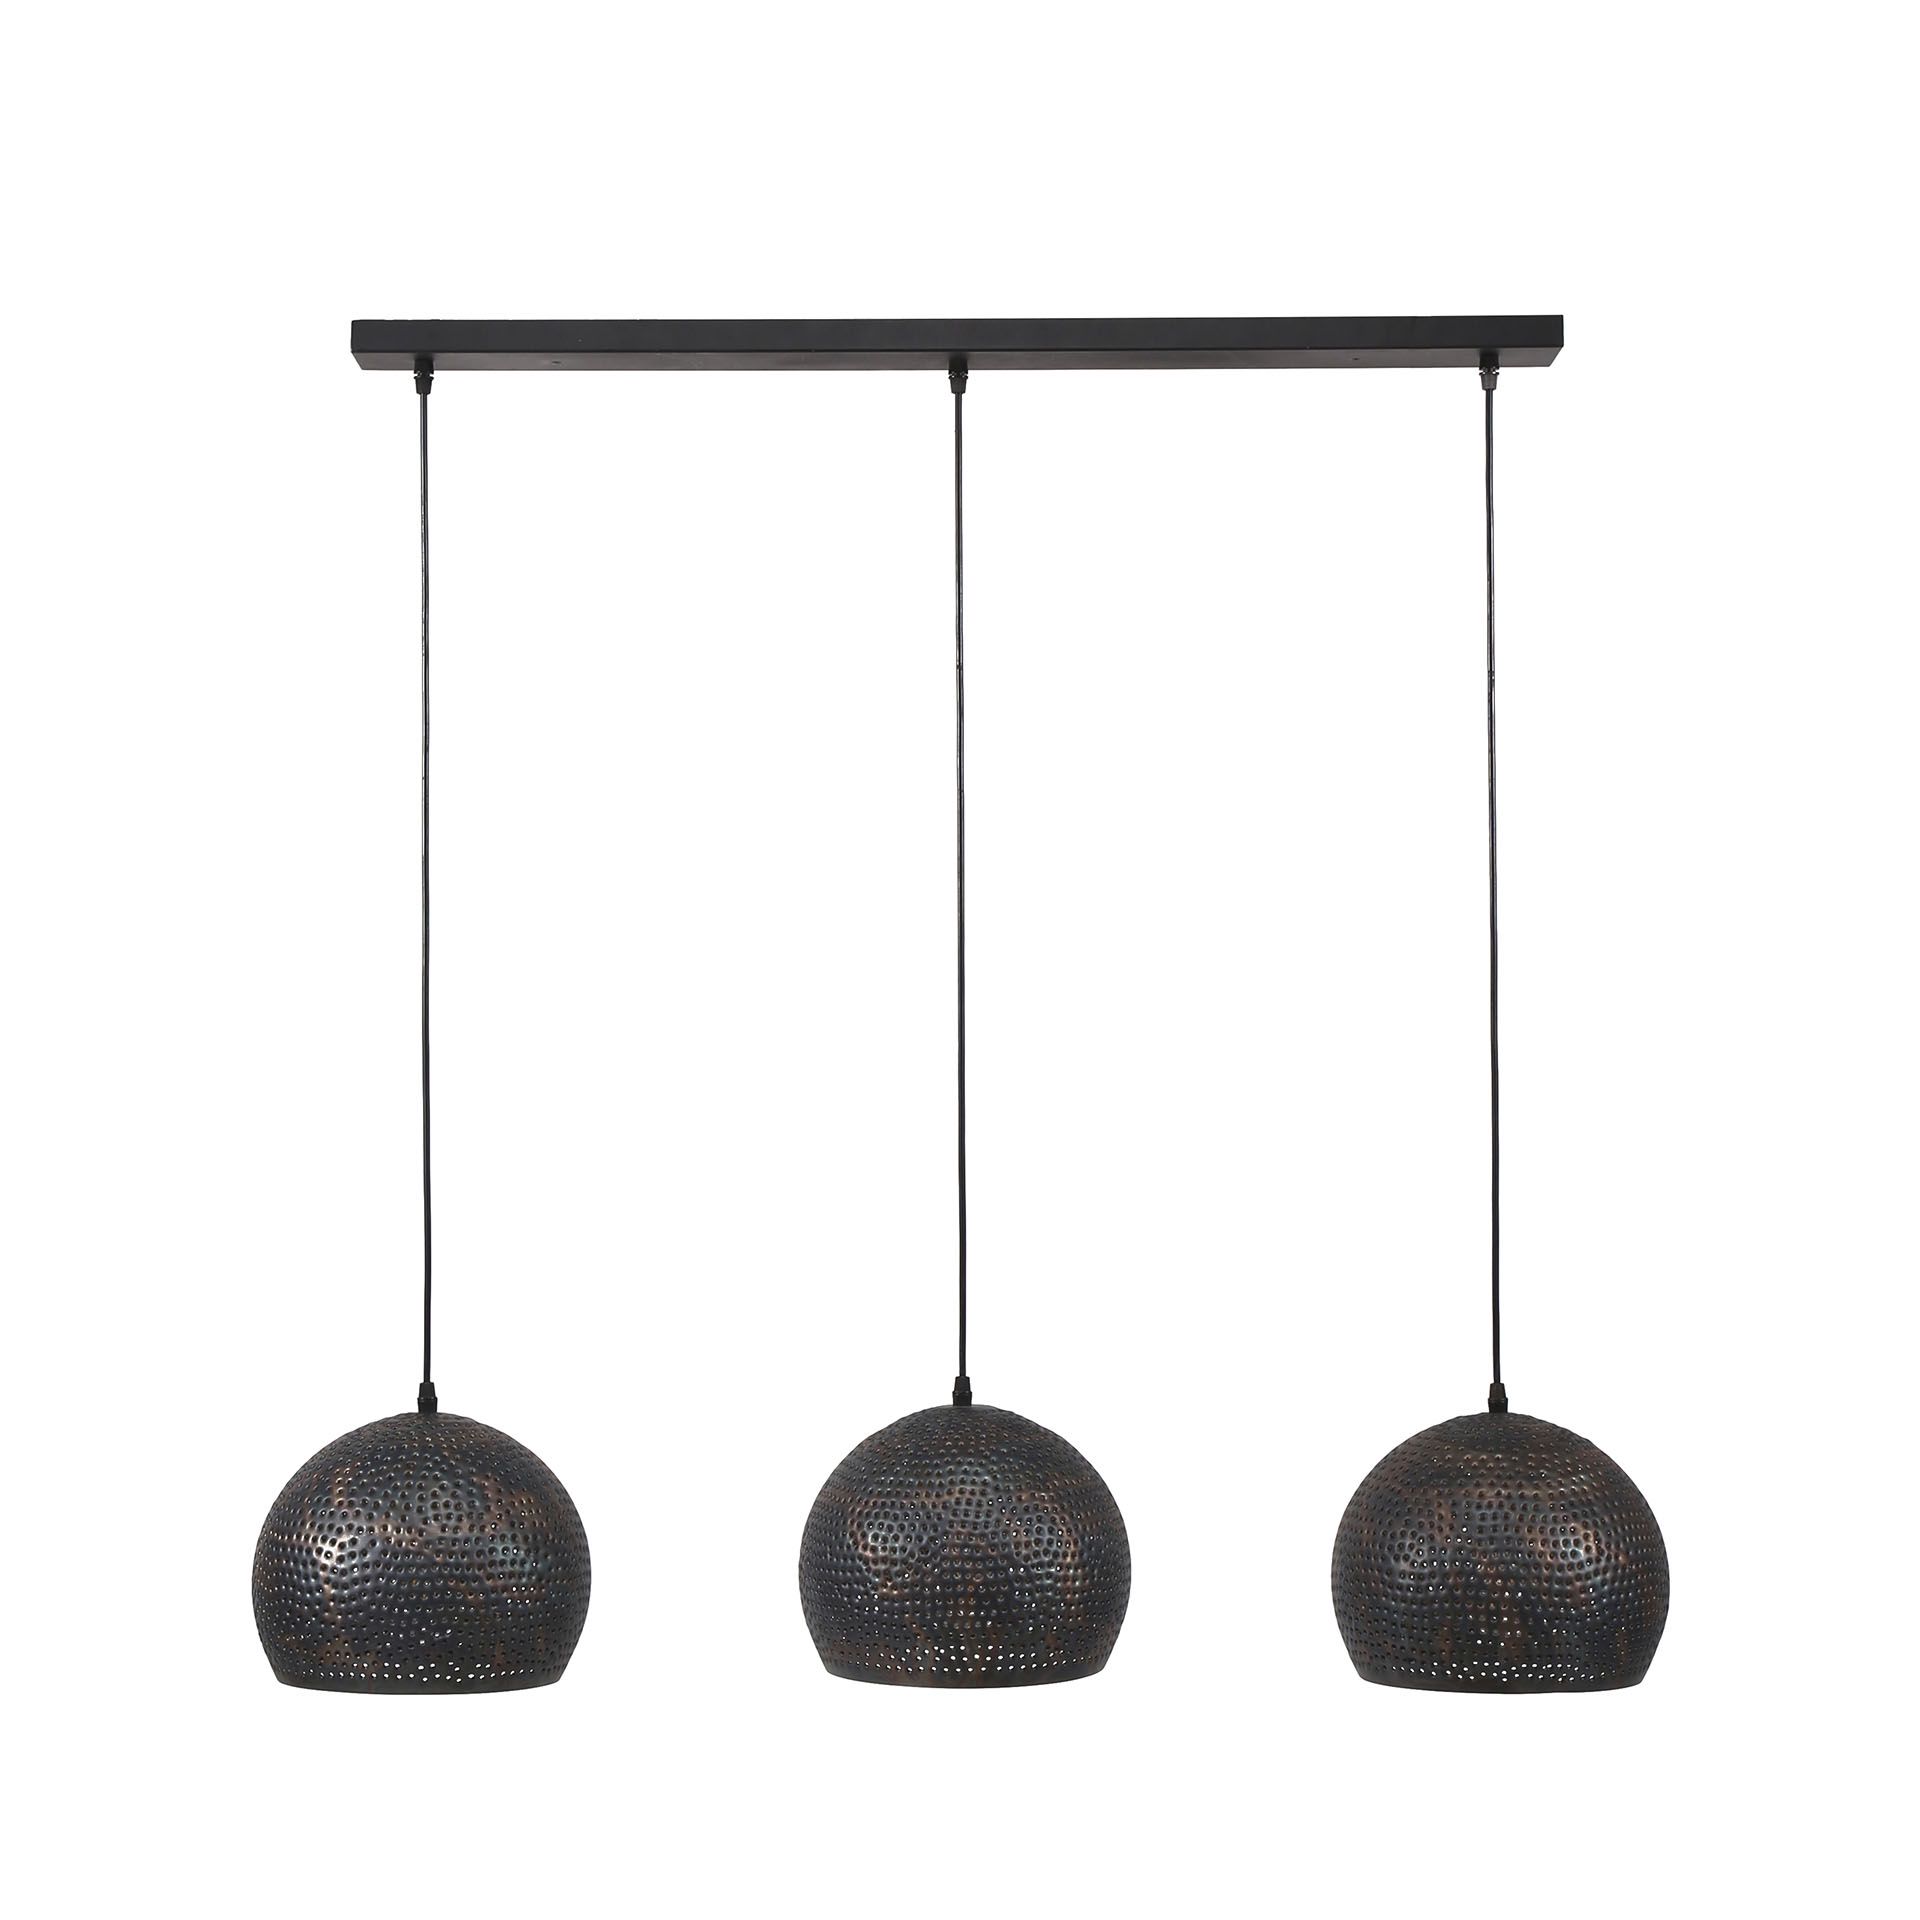 arnstein-hanglamp-3-bolle-kappen-zwart-bruin-gaatjes-geperforeerd-3